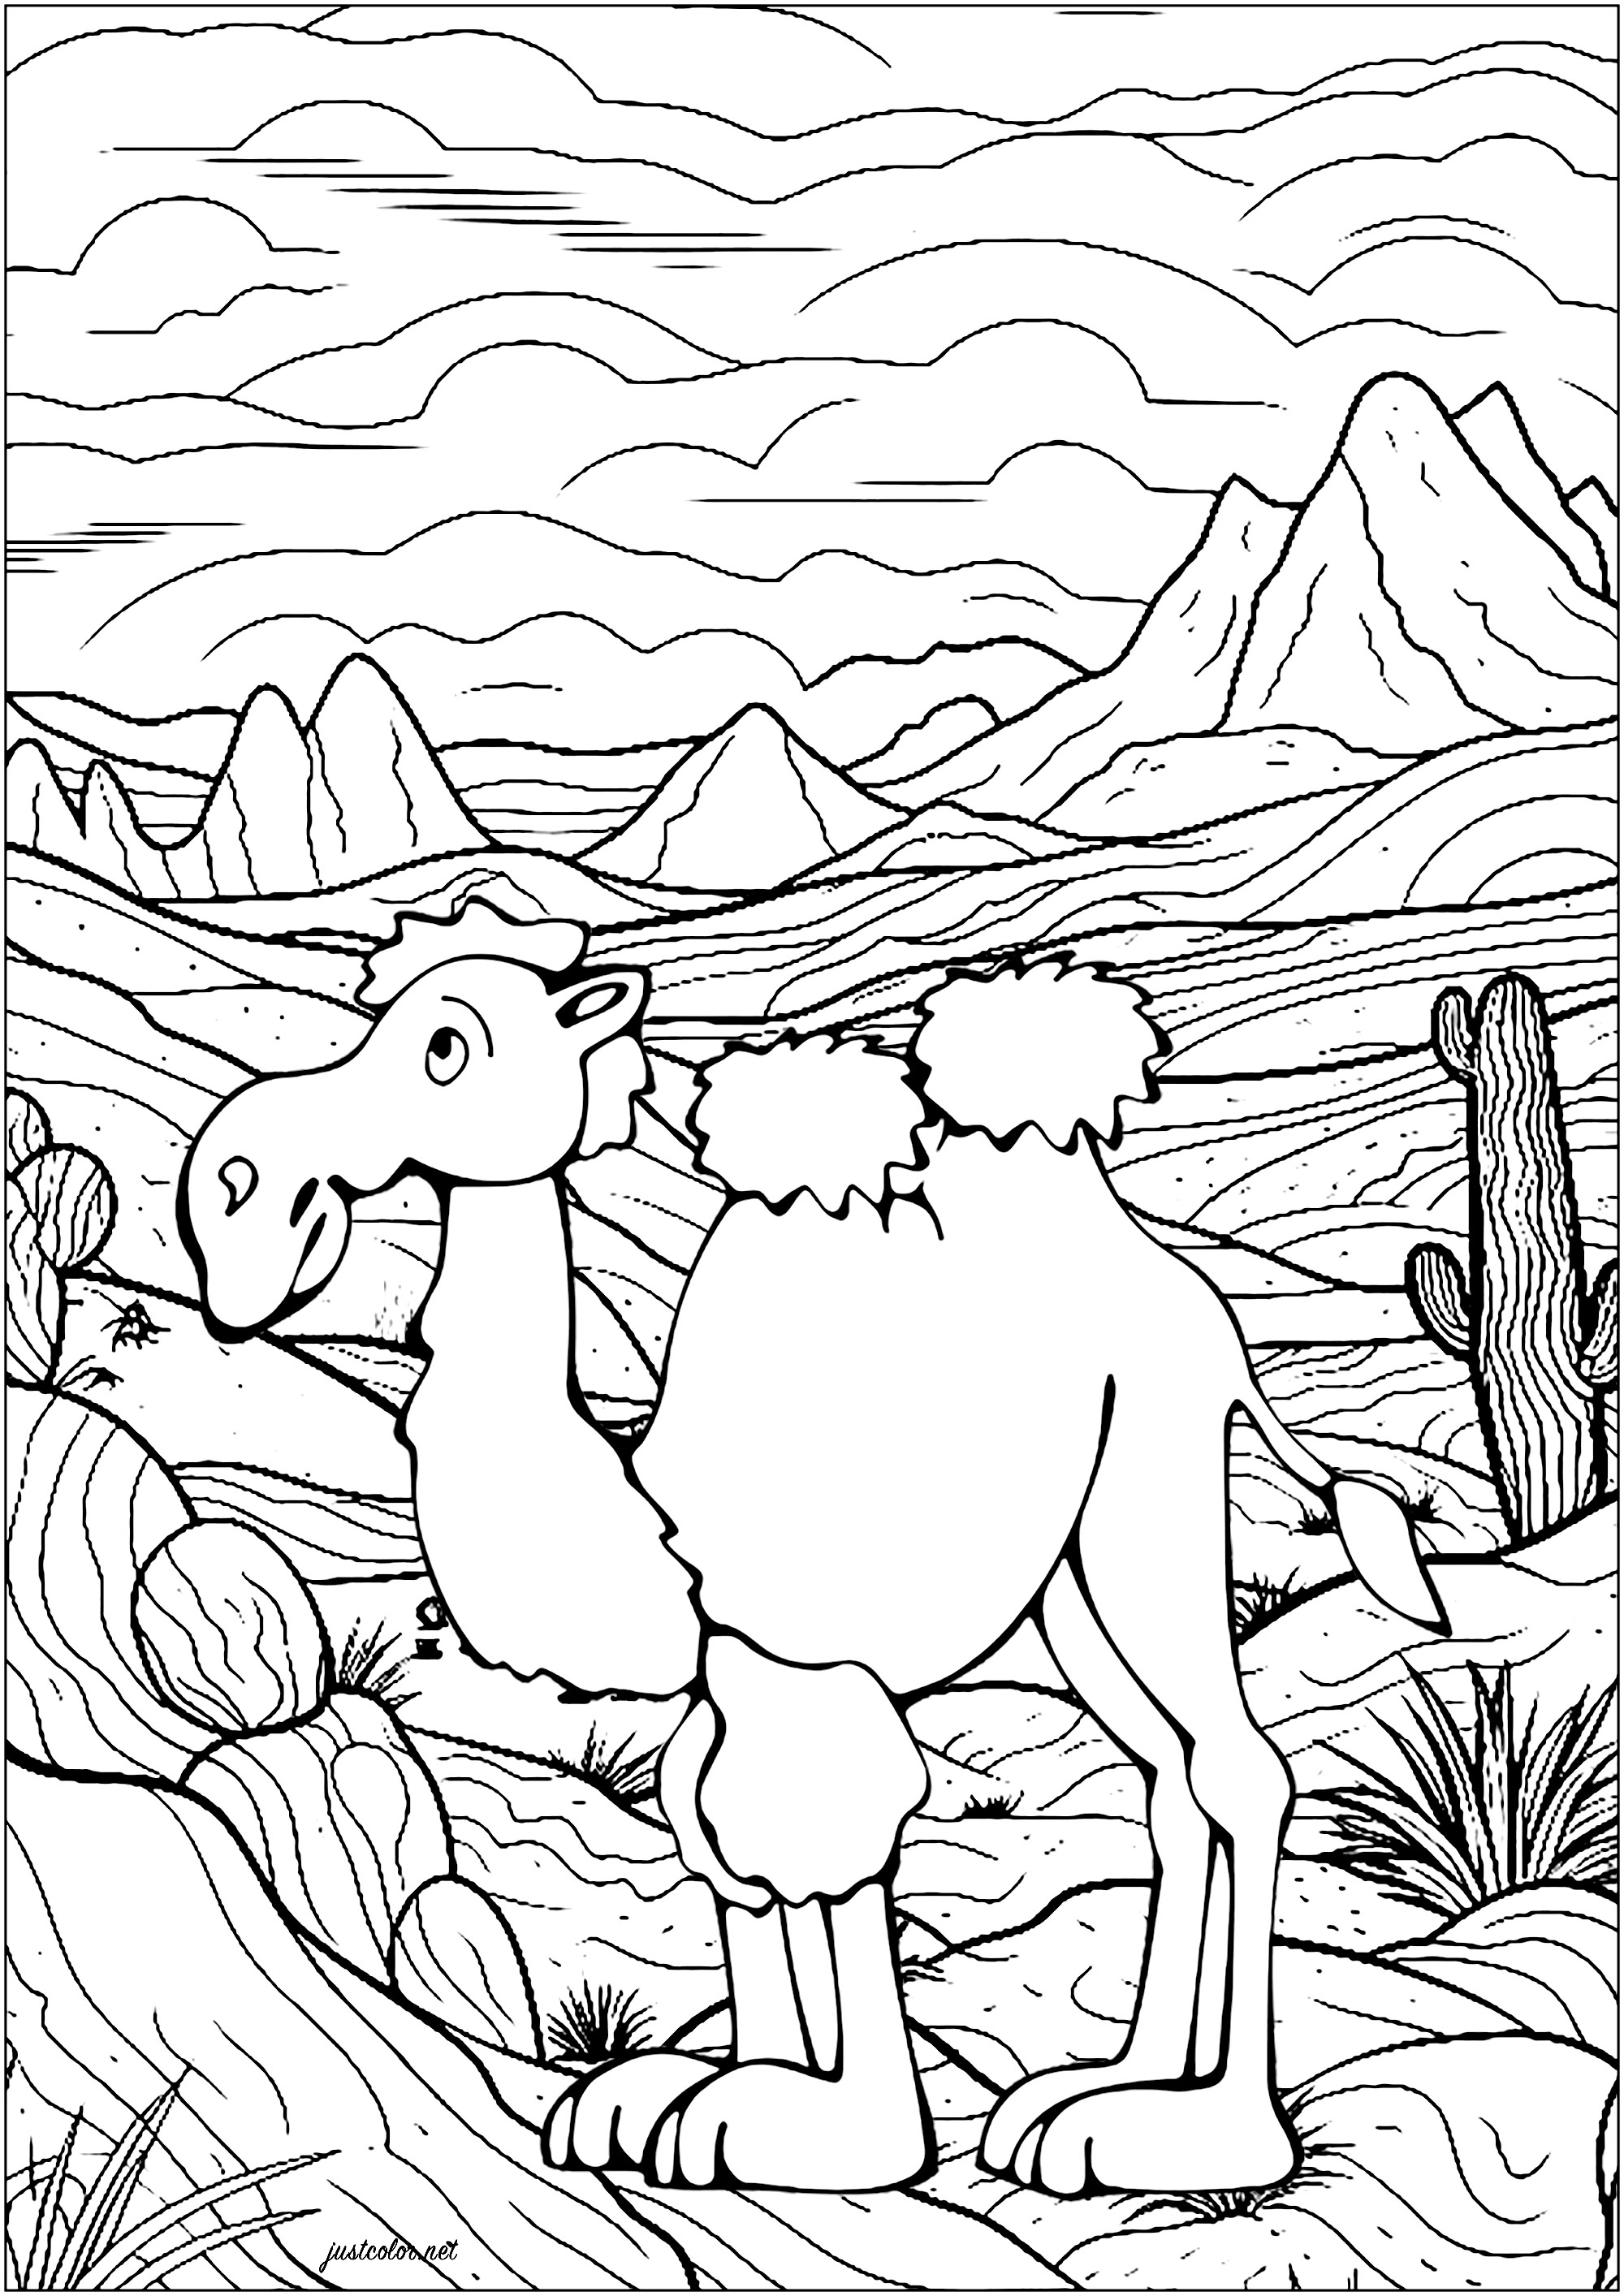 Cammello nel deserto. Colorazione di un cammello nel deserto, con molti dettagli sullo sfondo: montagne, cactus, cielo nuvoloso...